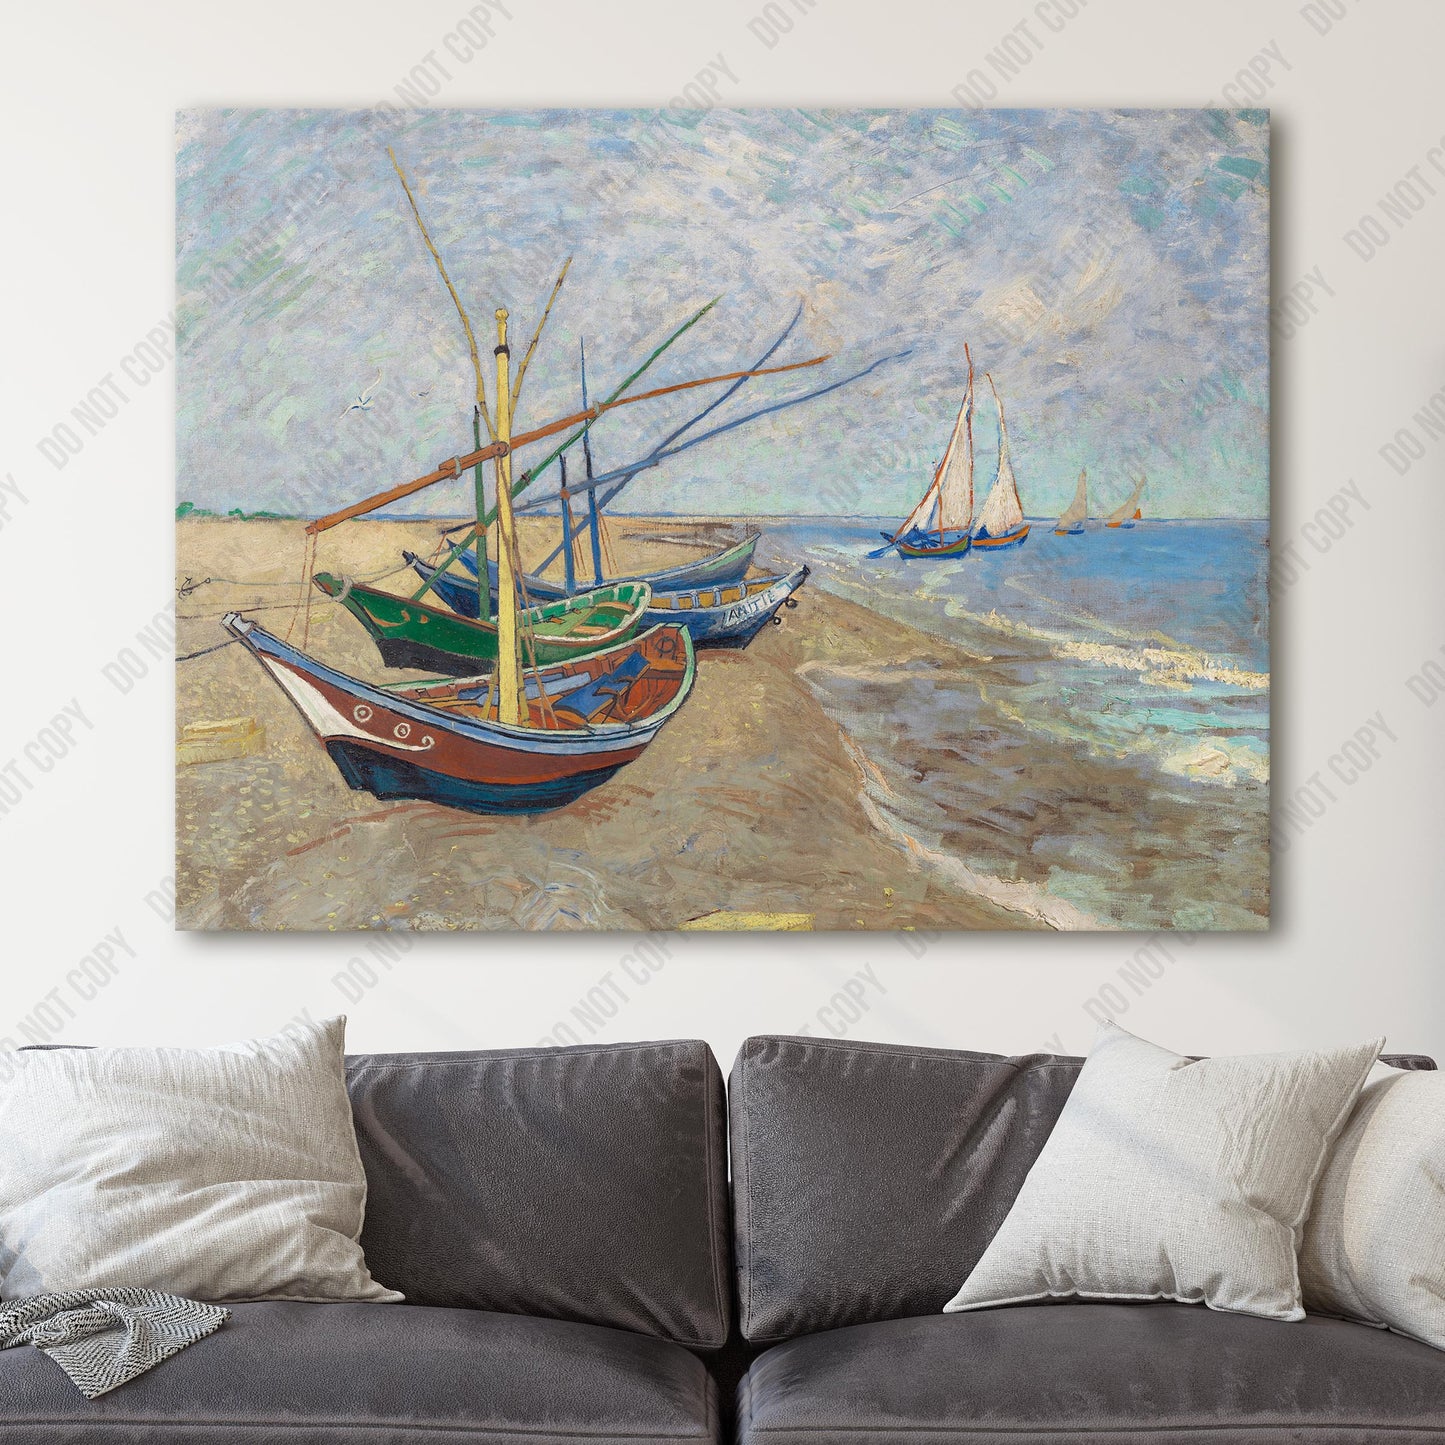 Fishing Boats on the Beach at Saintes-Maries (1888) by Van Gogh